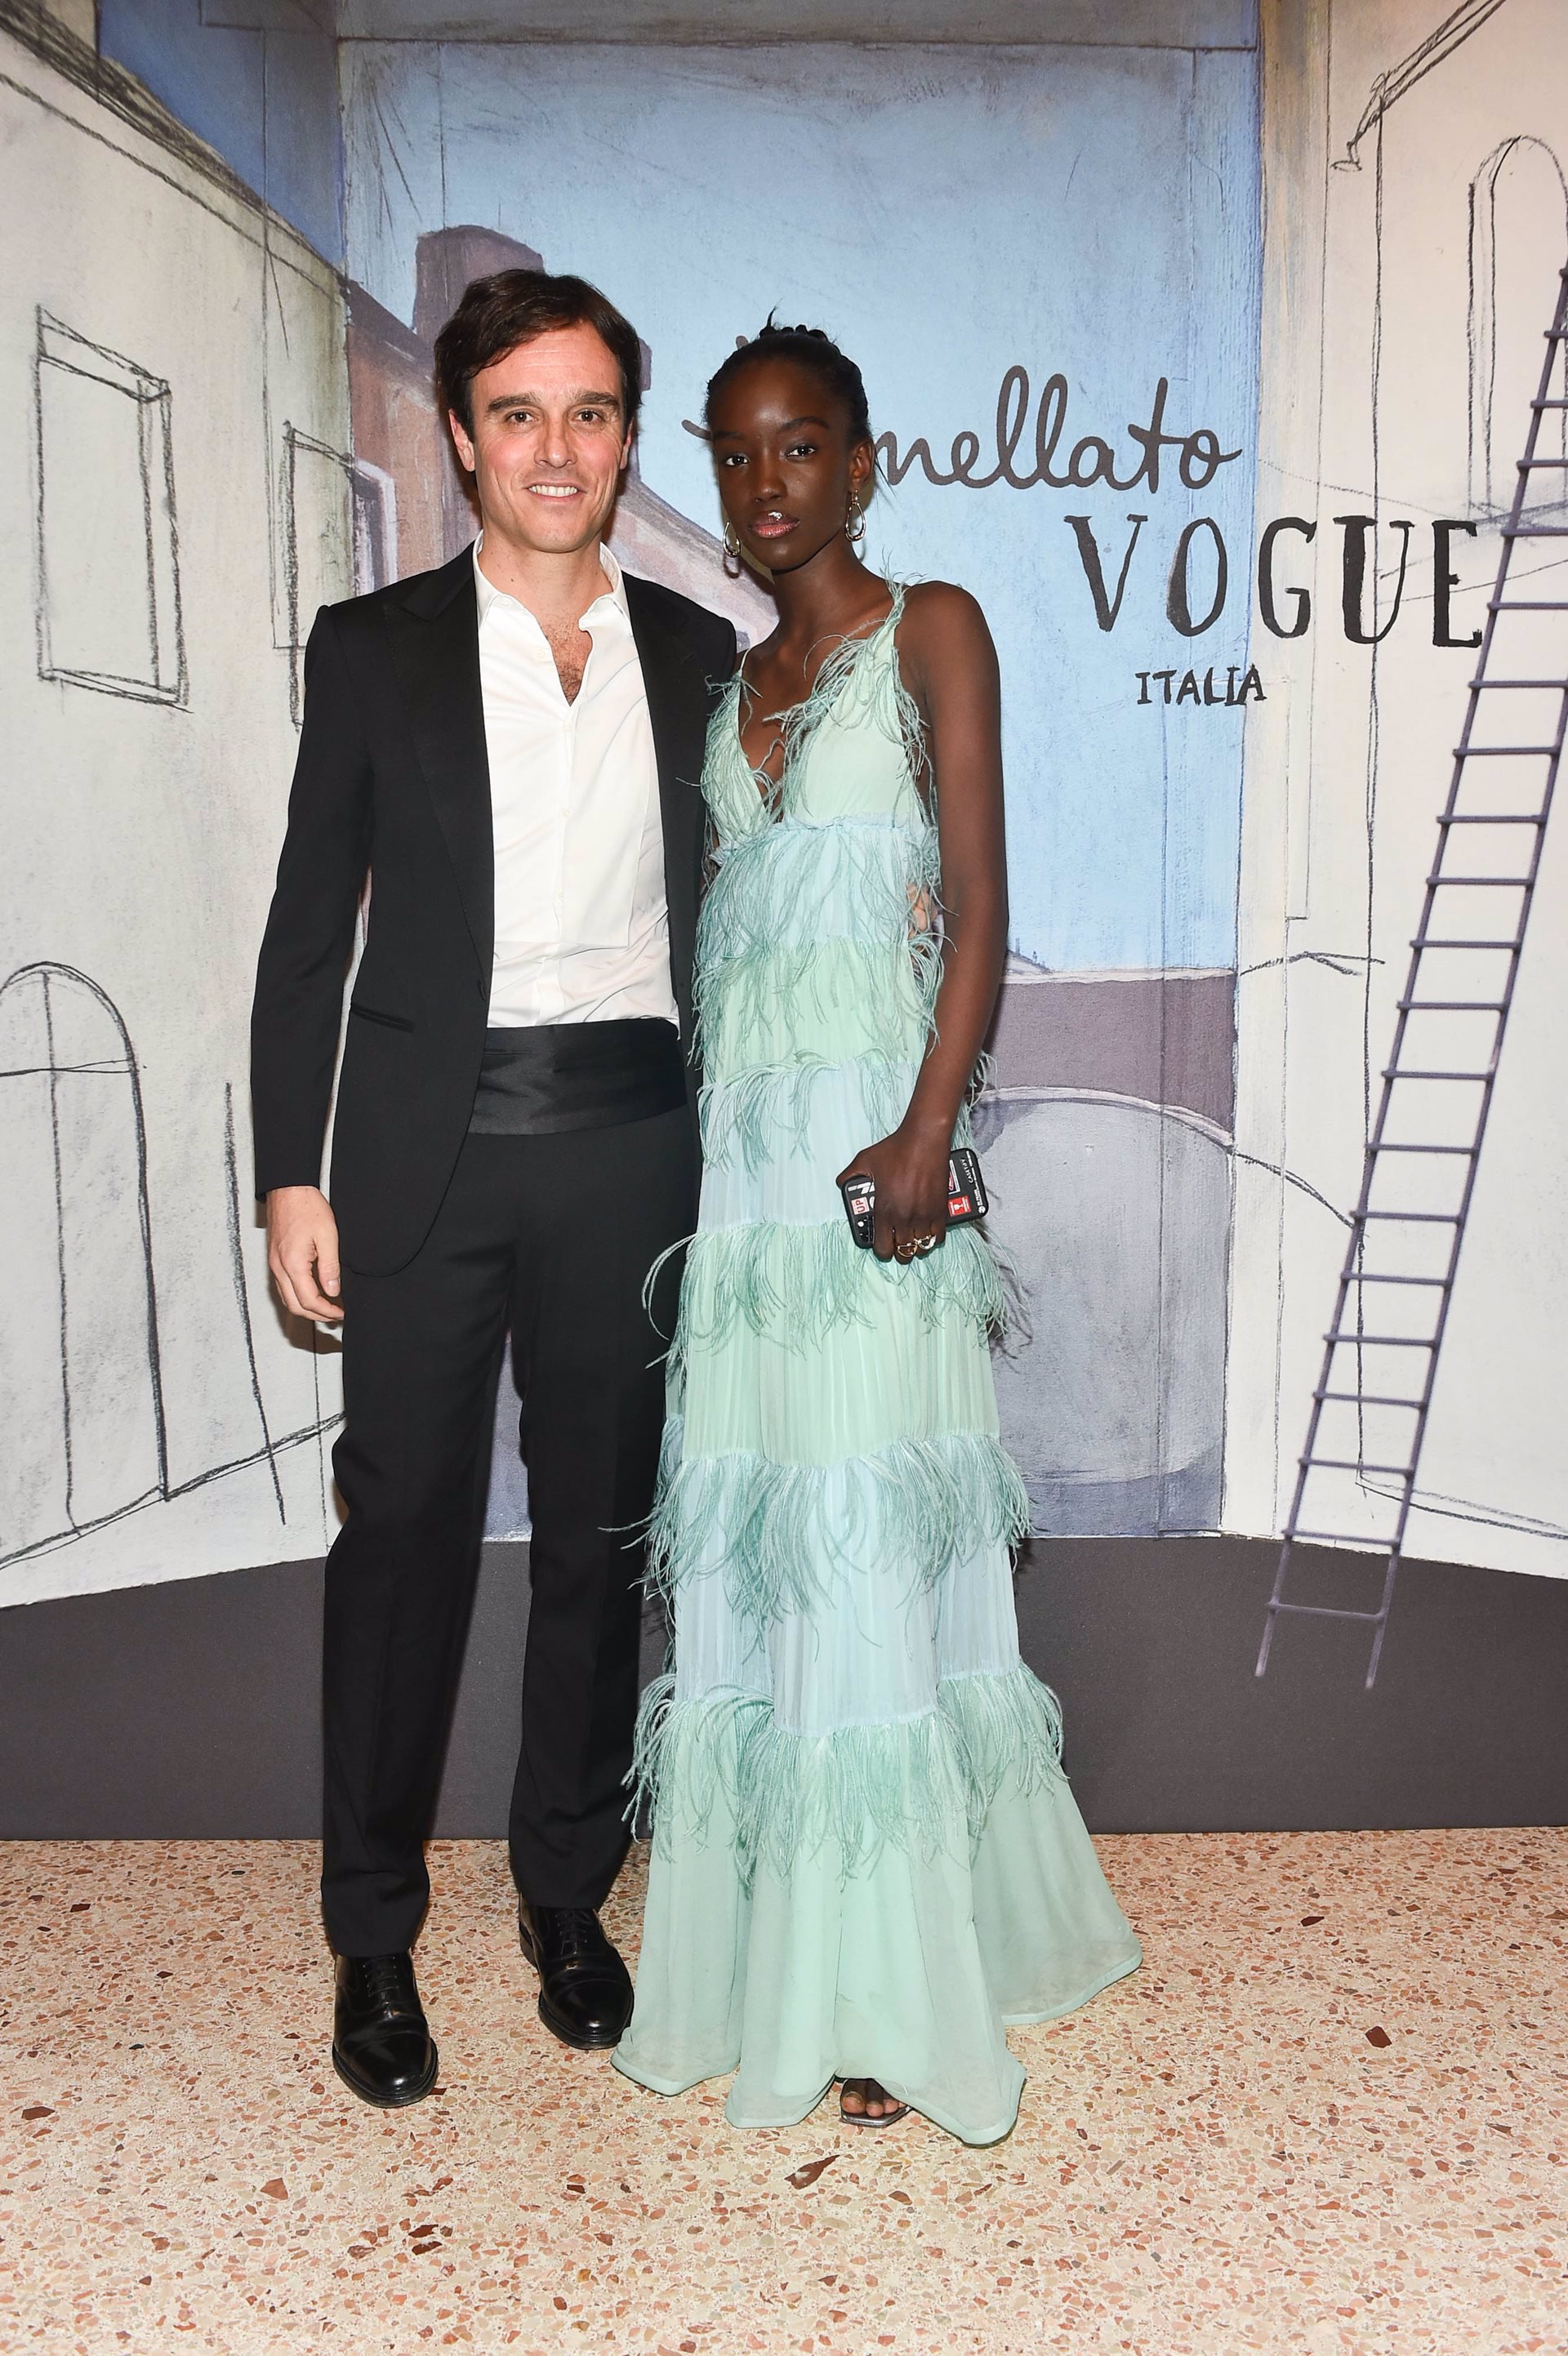 Vogue 'Protect Venice' de Pomellato junto con Vogue Italia realizan cena:  Emanuele Farneti y Maty Fall